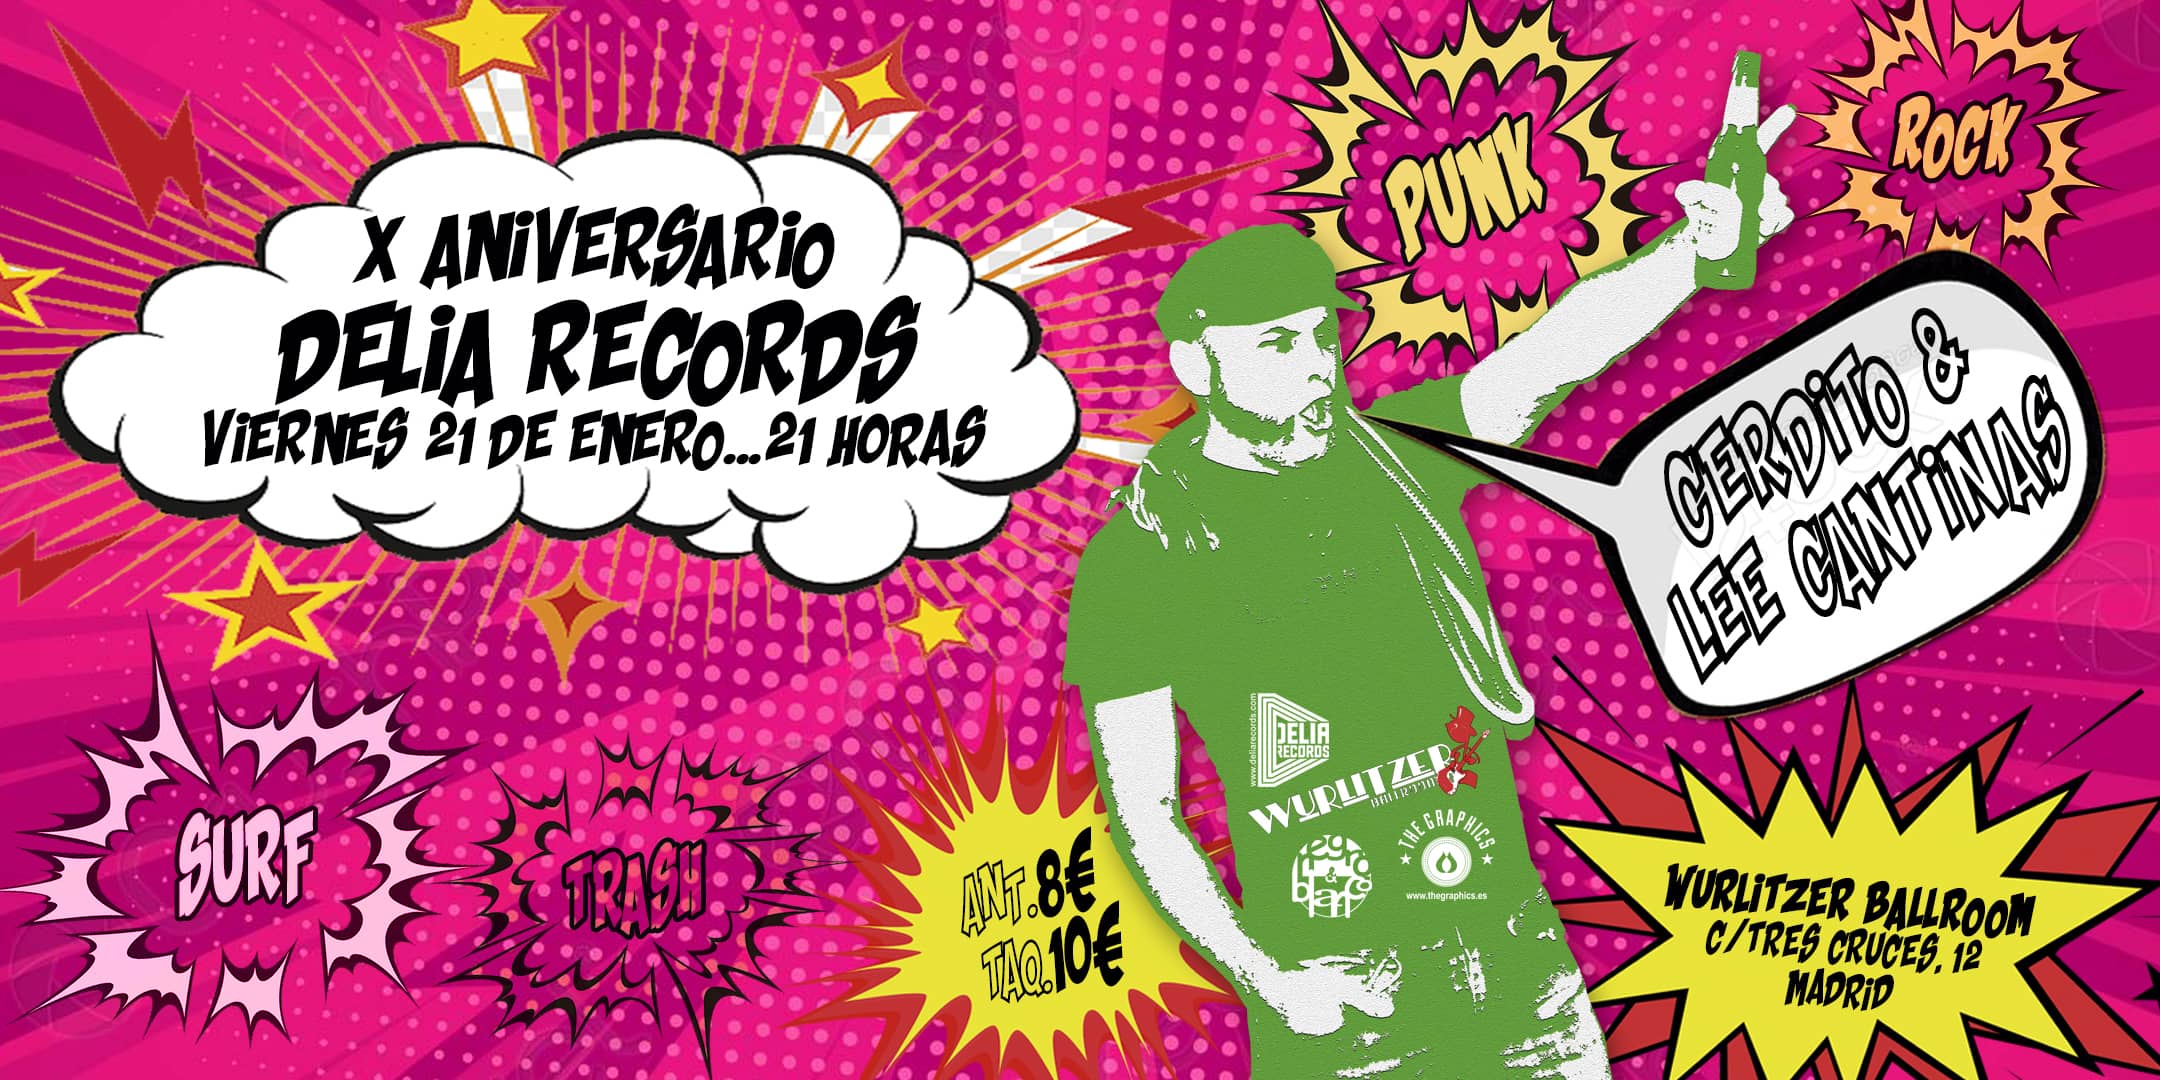 X Aniversario Delia Records [Fiesta Punk Rock Trash Surf en Madrid @ Wurlitzer Ballroom] Cerdito & Lee Cantinas